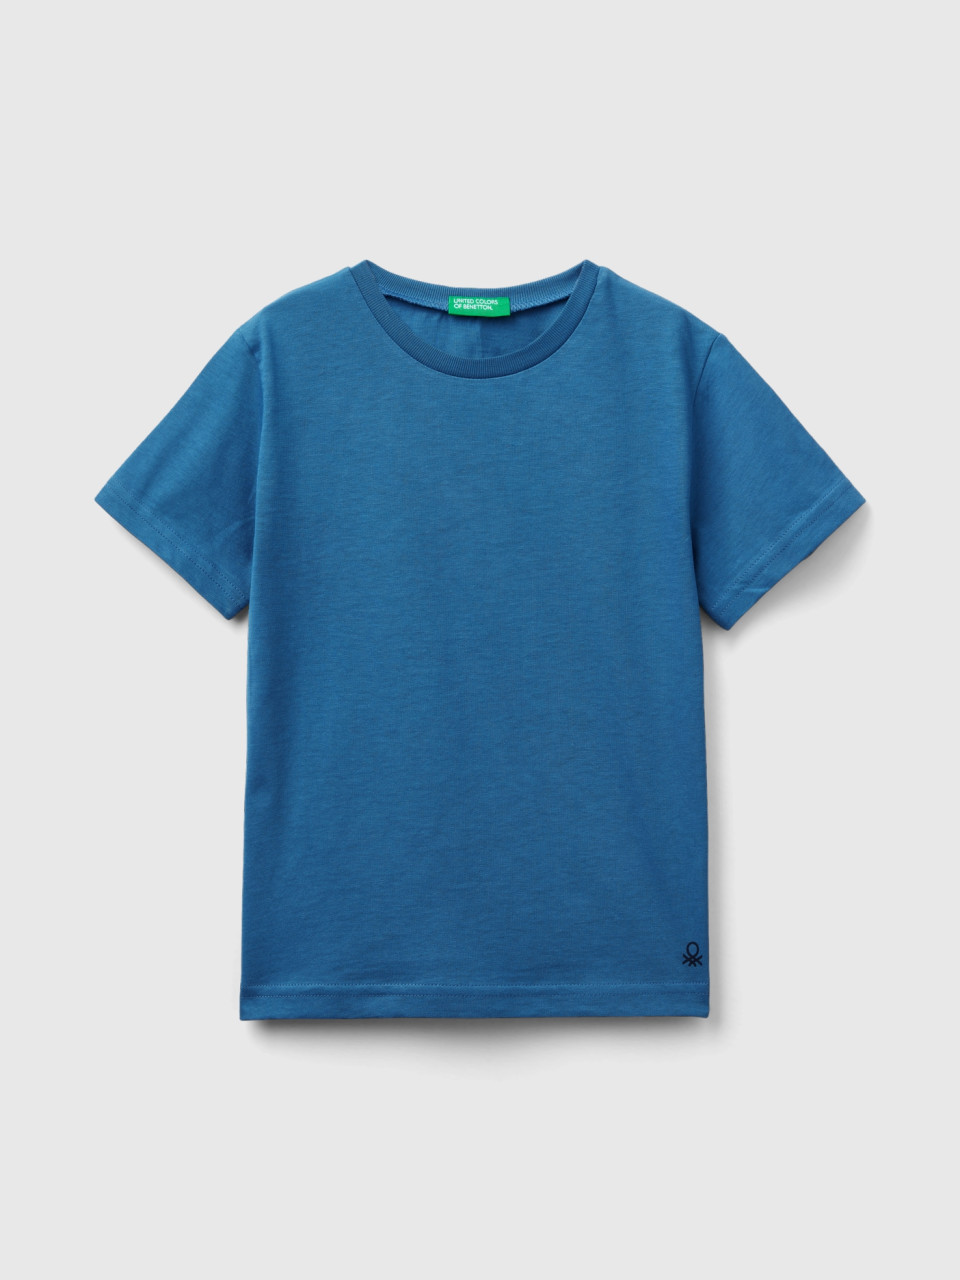 Benetton, Camiseta De Algodón Orgánico, Azul, Niños